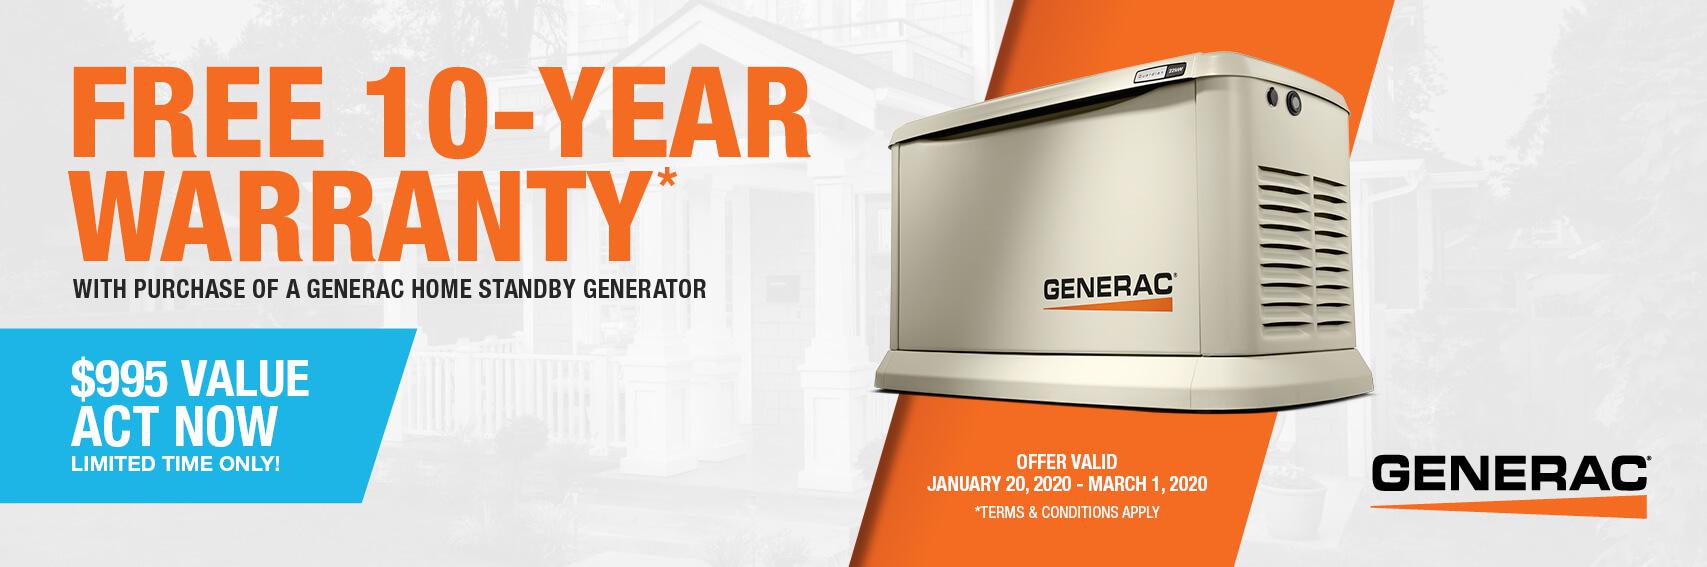 Homestandby Generator Deal | Warranty Offer | Generac Dealer | FT LAUDERDALE,, FL